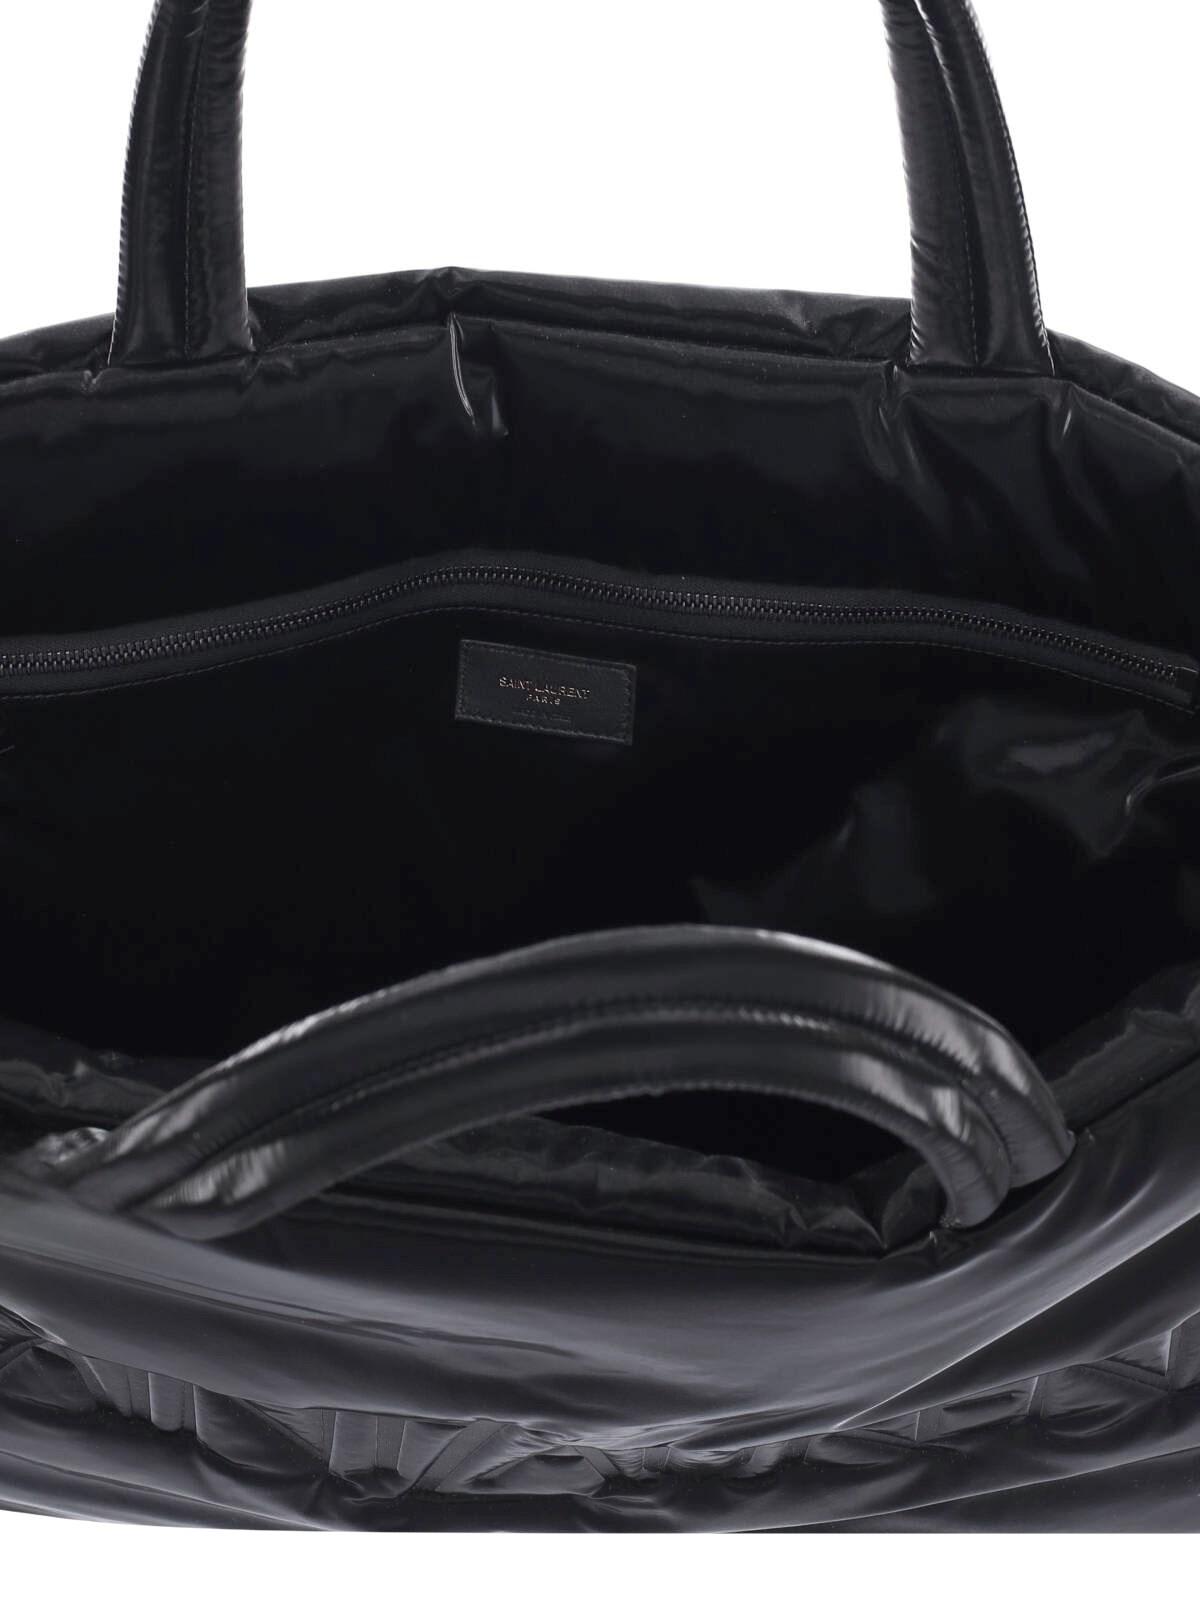 Saint Laurent Logo Tote Bag In Black